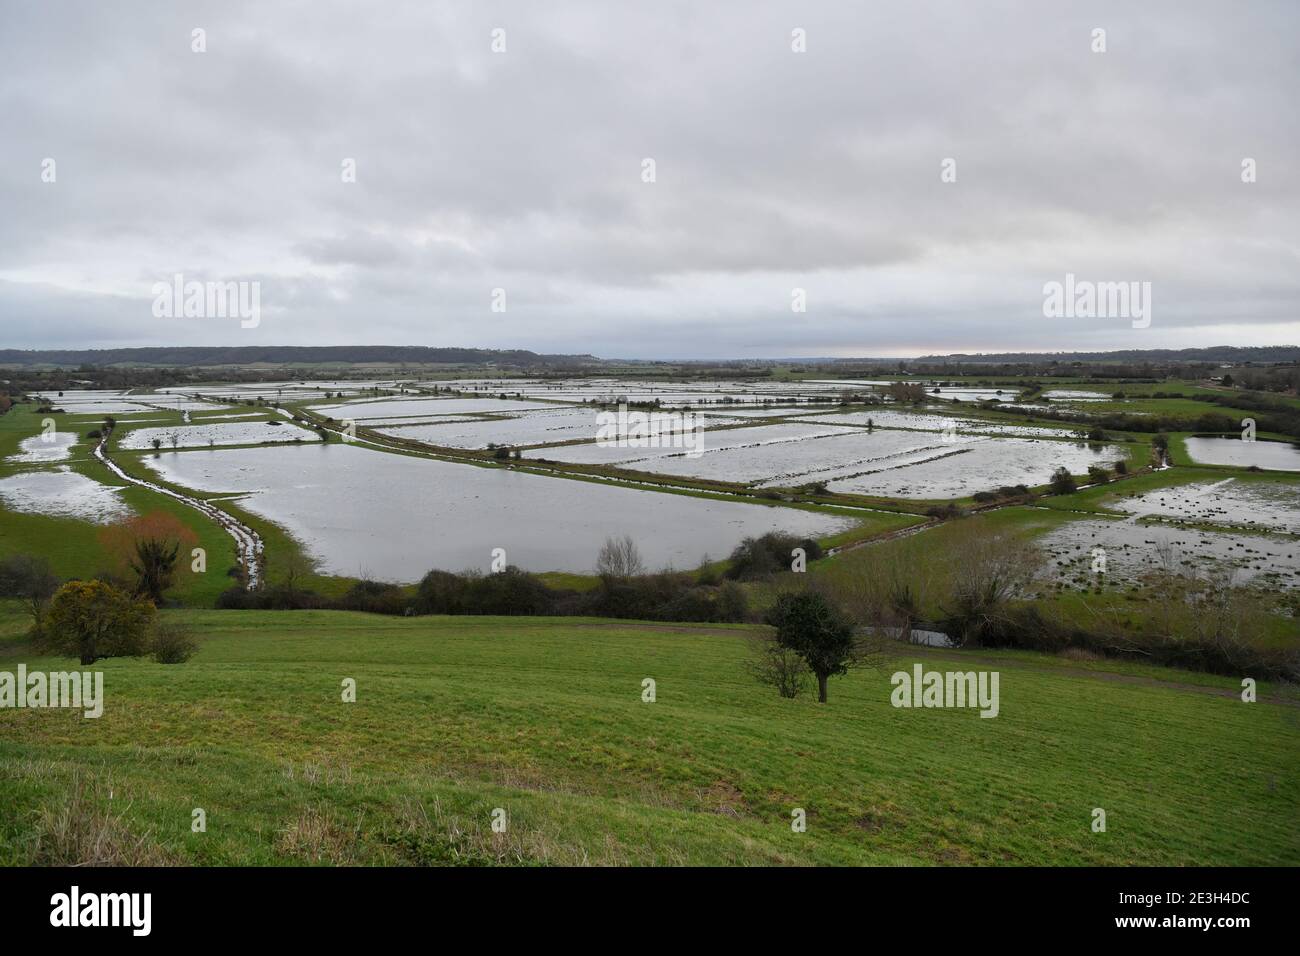 Les champs ont été inondés à travers les niveaux du Somerset près de Burrowbridge, où l'eau de surface est déjà élevée par endroits. Date de la photo: Mardi 19 janvier 2021. Banque D'Images